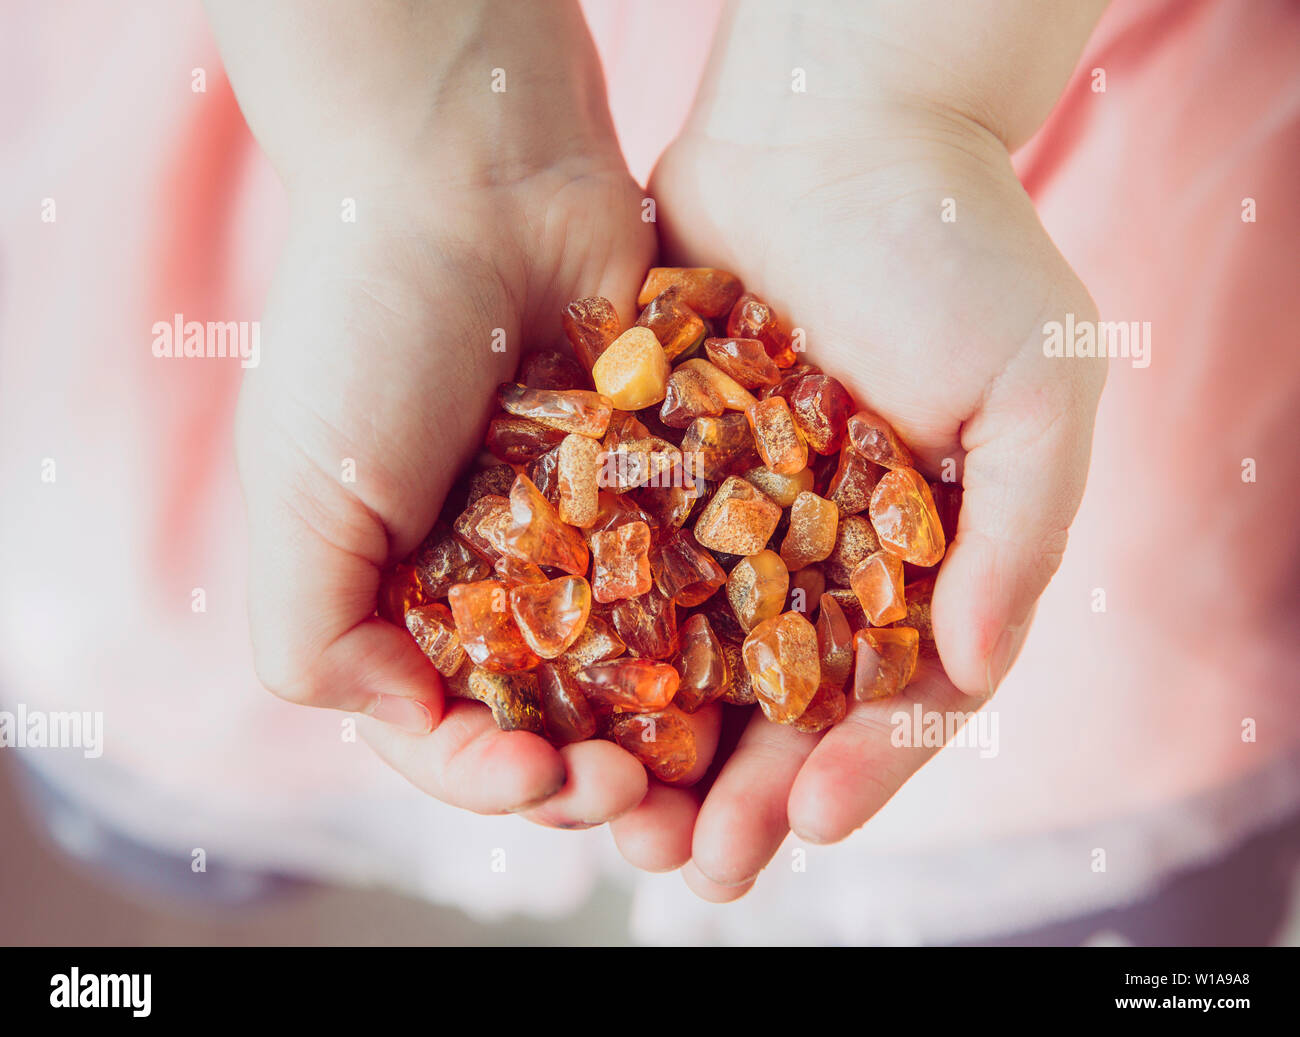 Junge Mädchen Holding orange gelb Stapel der Baltischen Bernstein oder succinite rohe Chips in Palms Hände, selektive konzentrieren. Für die Herstellung von Schmuck. Stockfoto